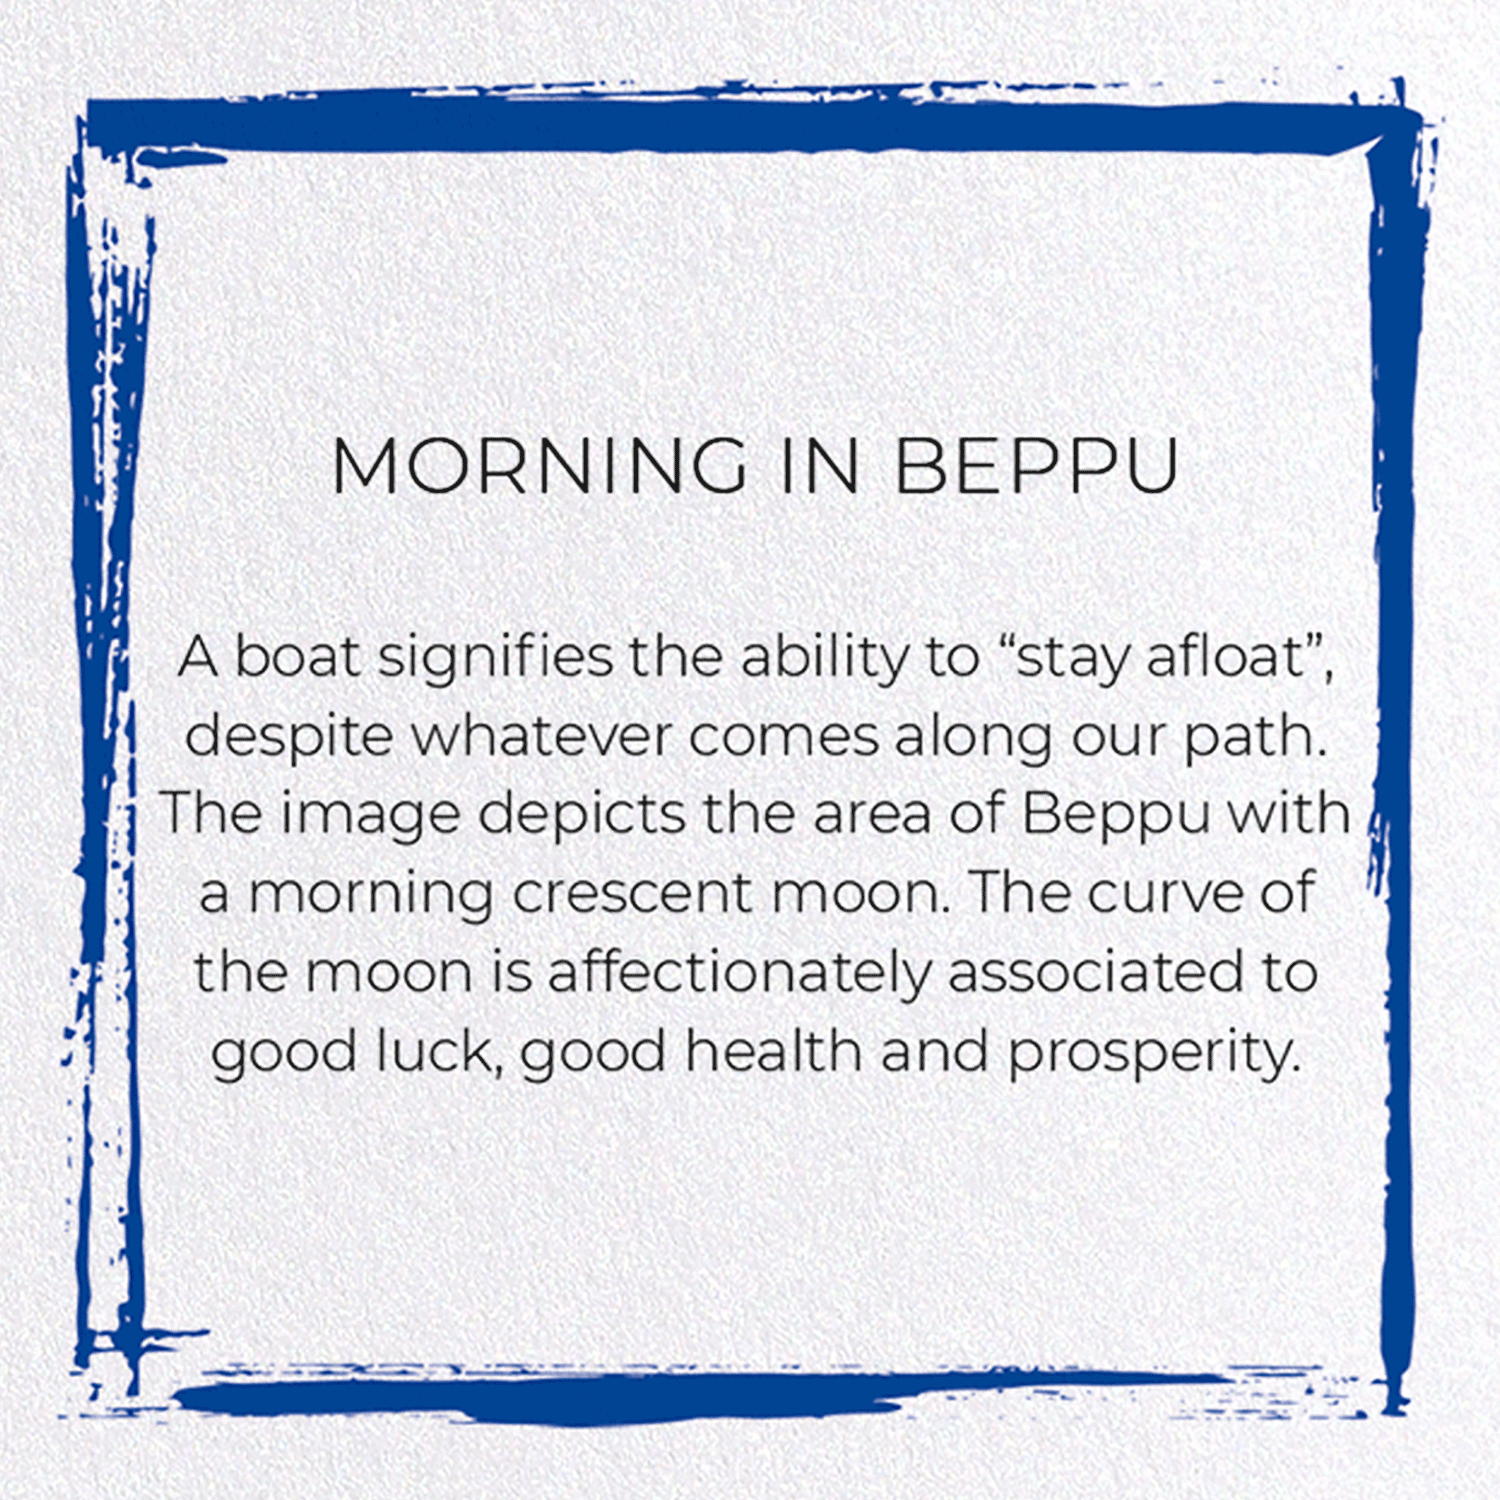 MORNING IN BEPPU